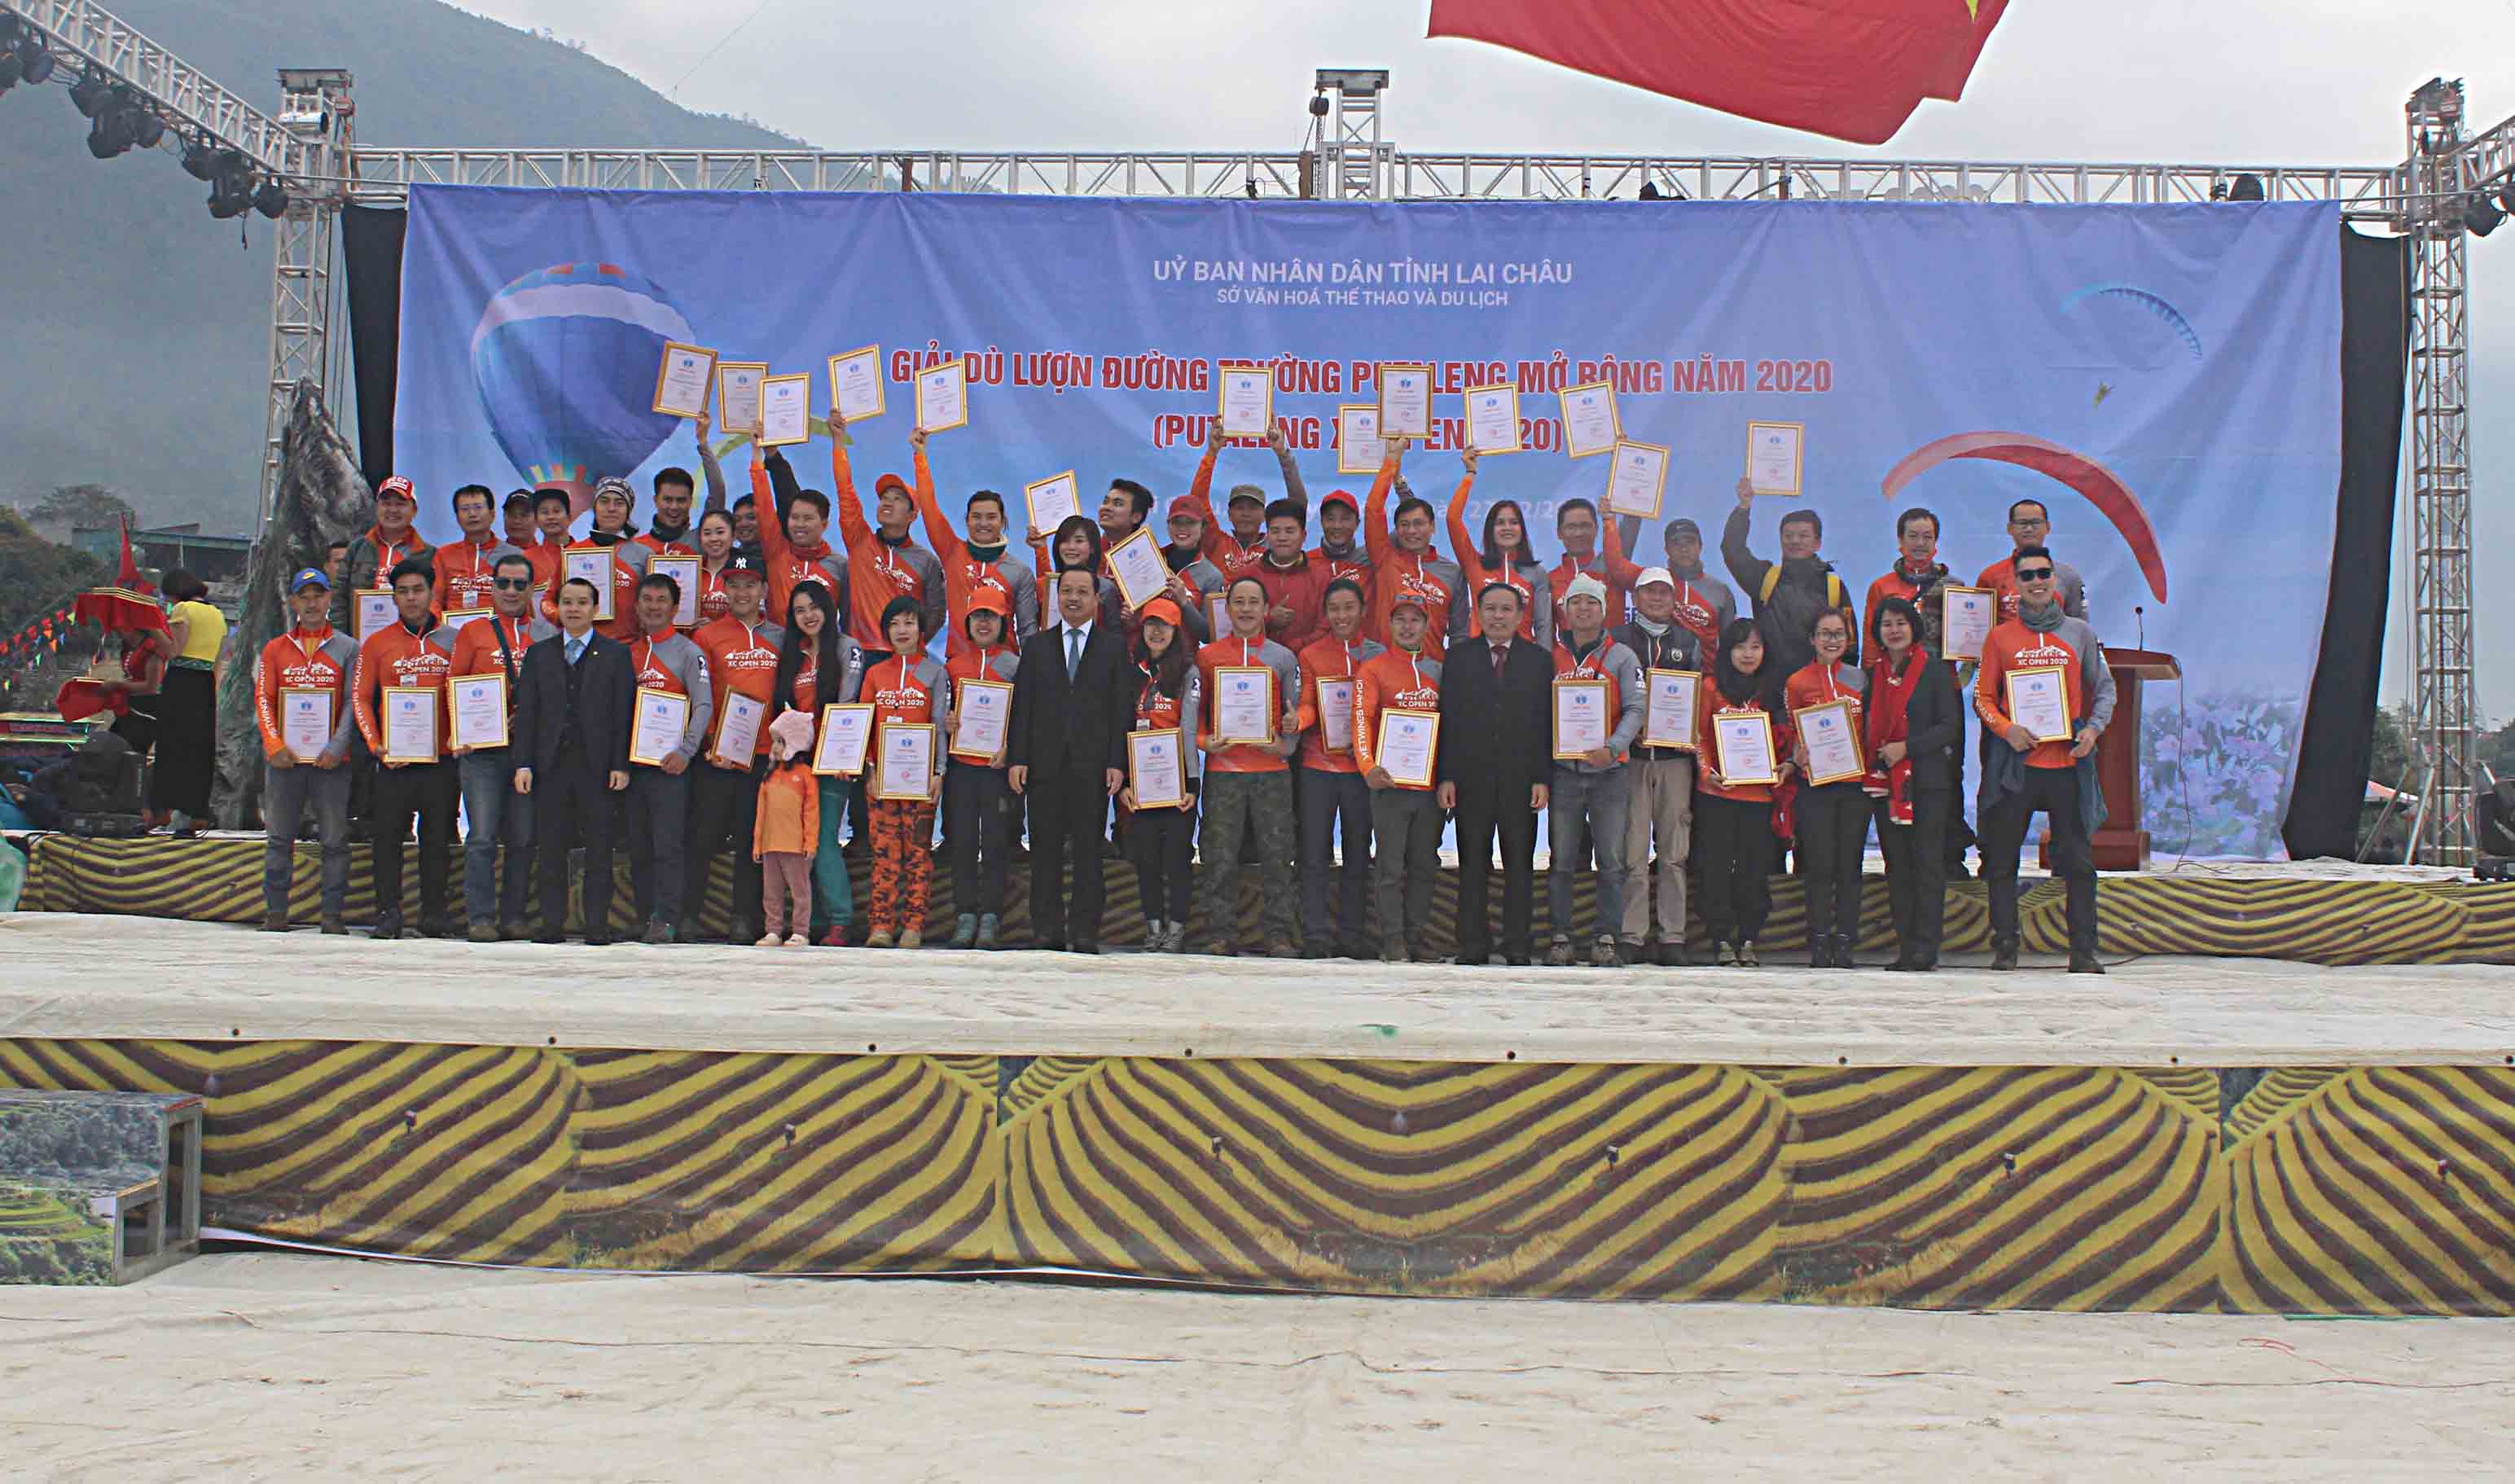 Các đồng chí lãnh đạo tỉnh trao giấy chứng nhận tham gia Giải thi đấu dù lượn đường trường Putaleng XC Open 2020 cho các phi công.